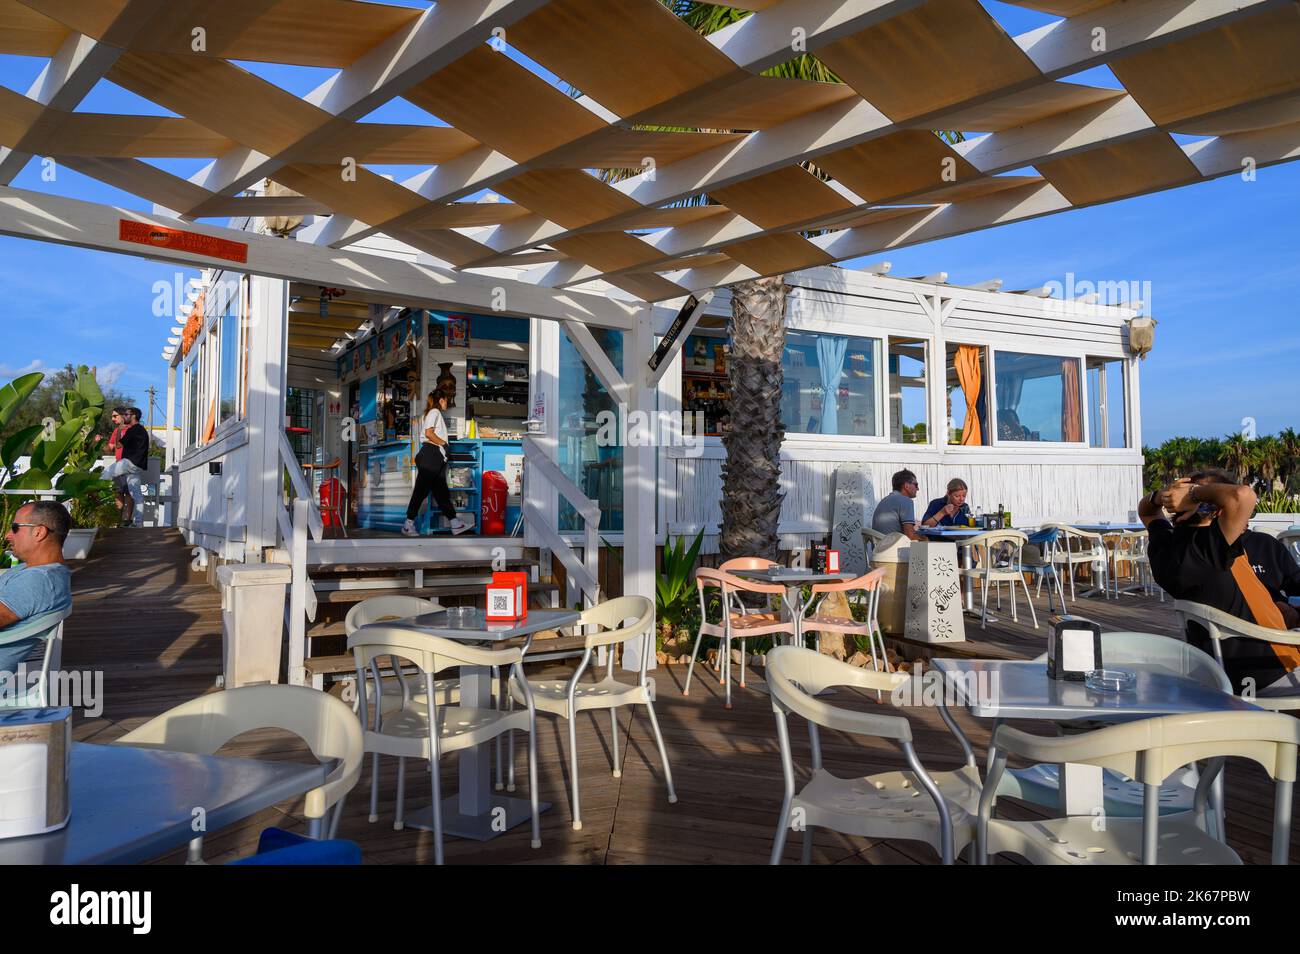 Fine stagione: Tavoli per lo più vuoti sulla terrazza al Sunset Café di Capilungo sulla costa a sud di Gallipoli, Puglia, Italia. Foto Stock